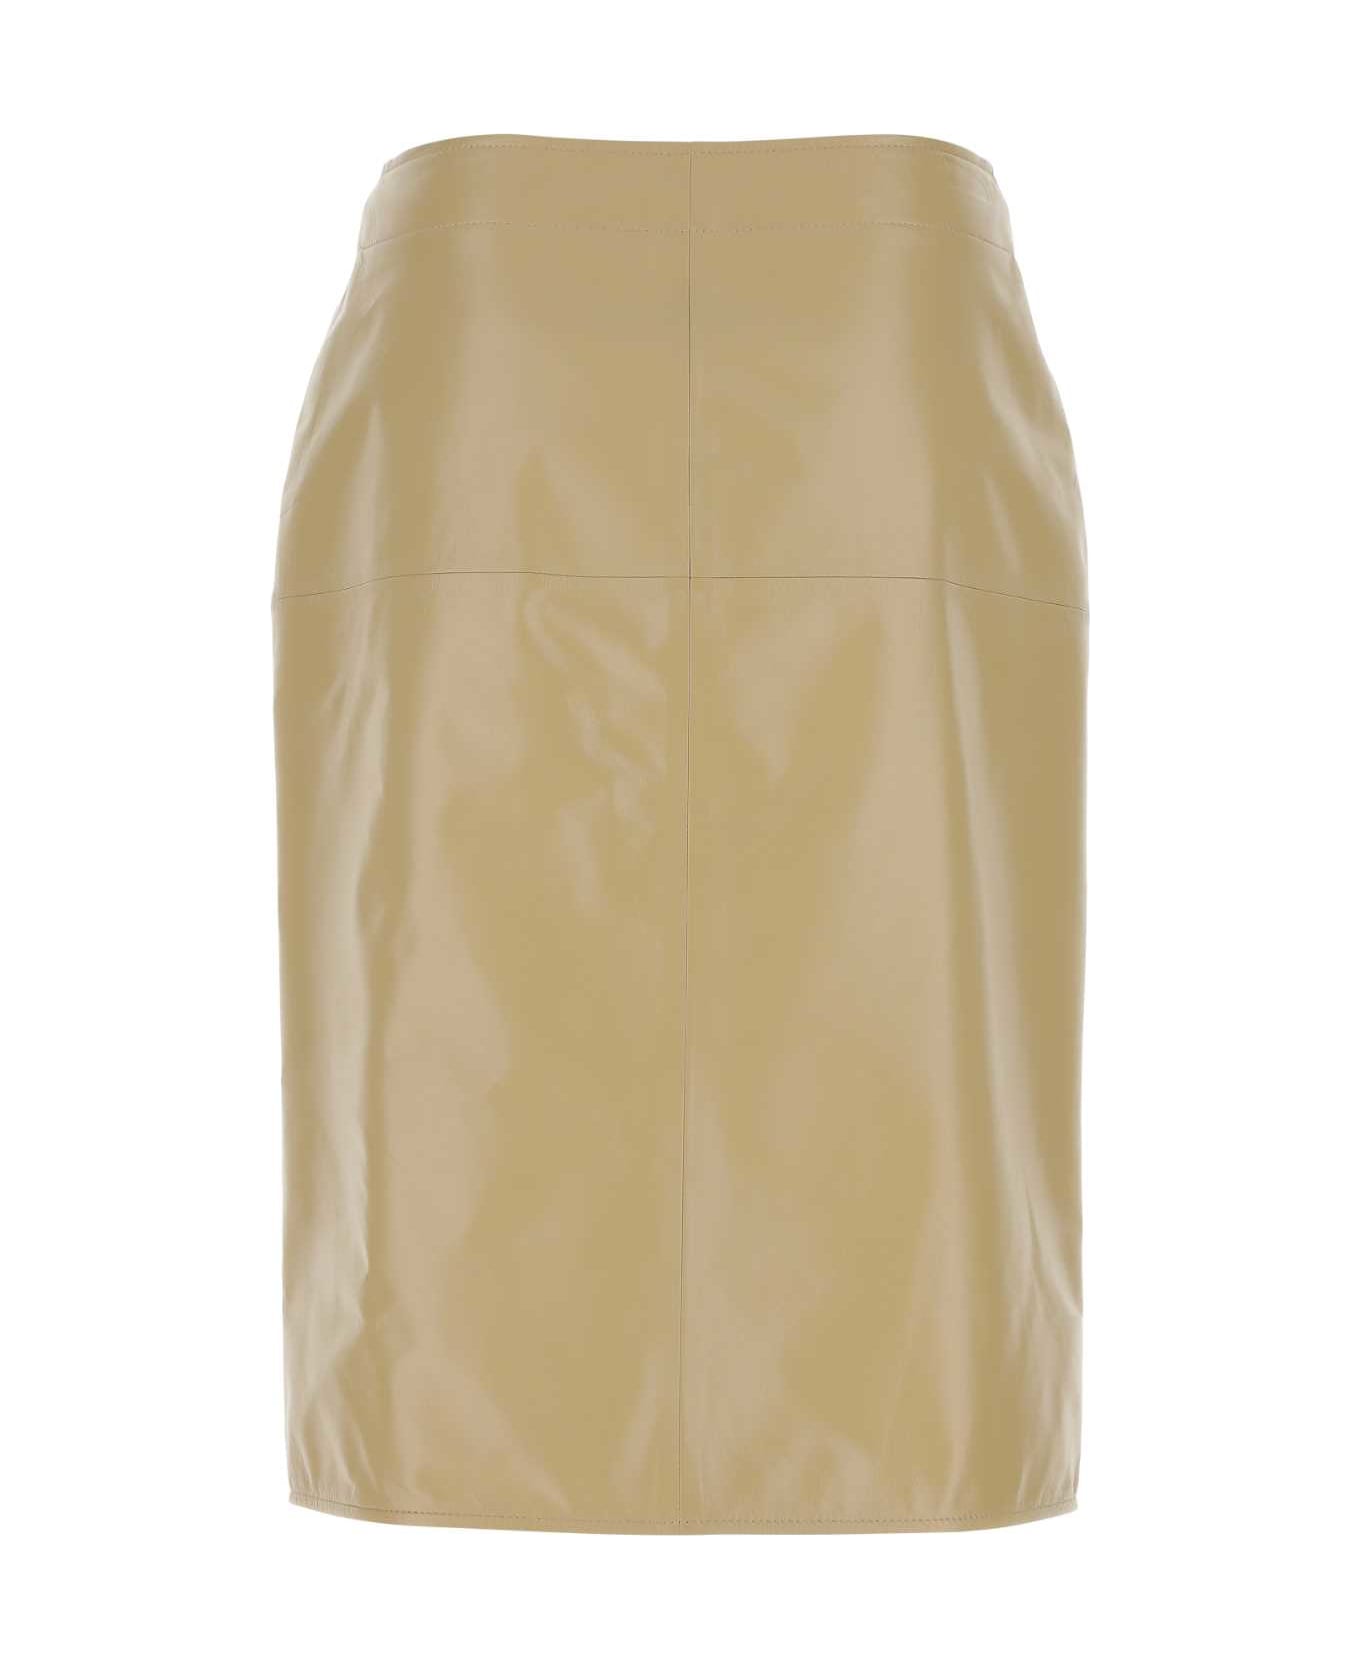 Bottega Veneta Beige Leather Skirt - 9640